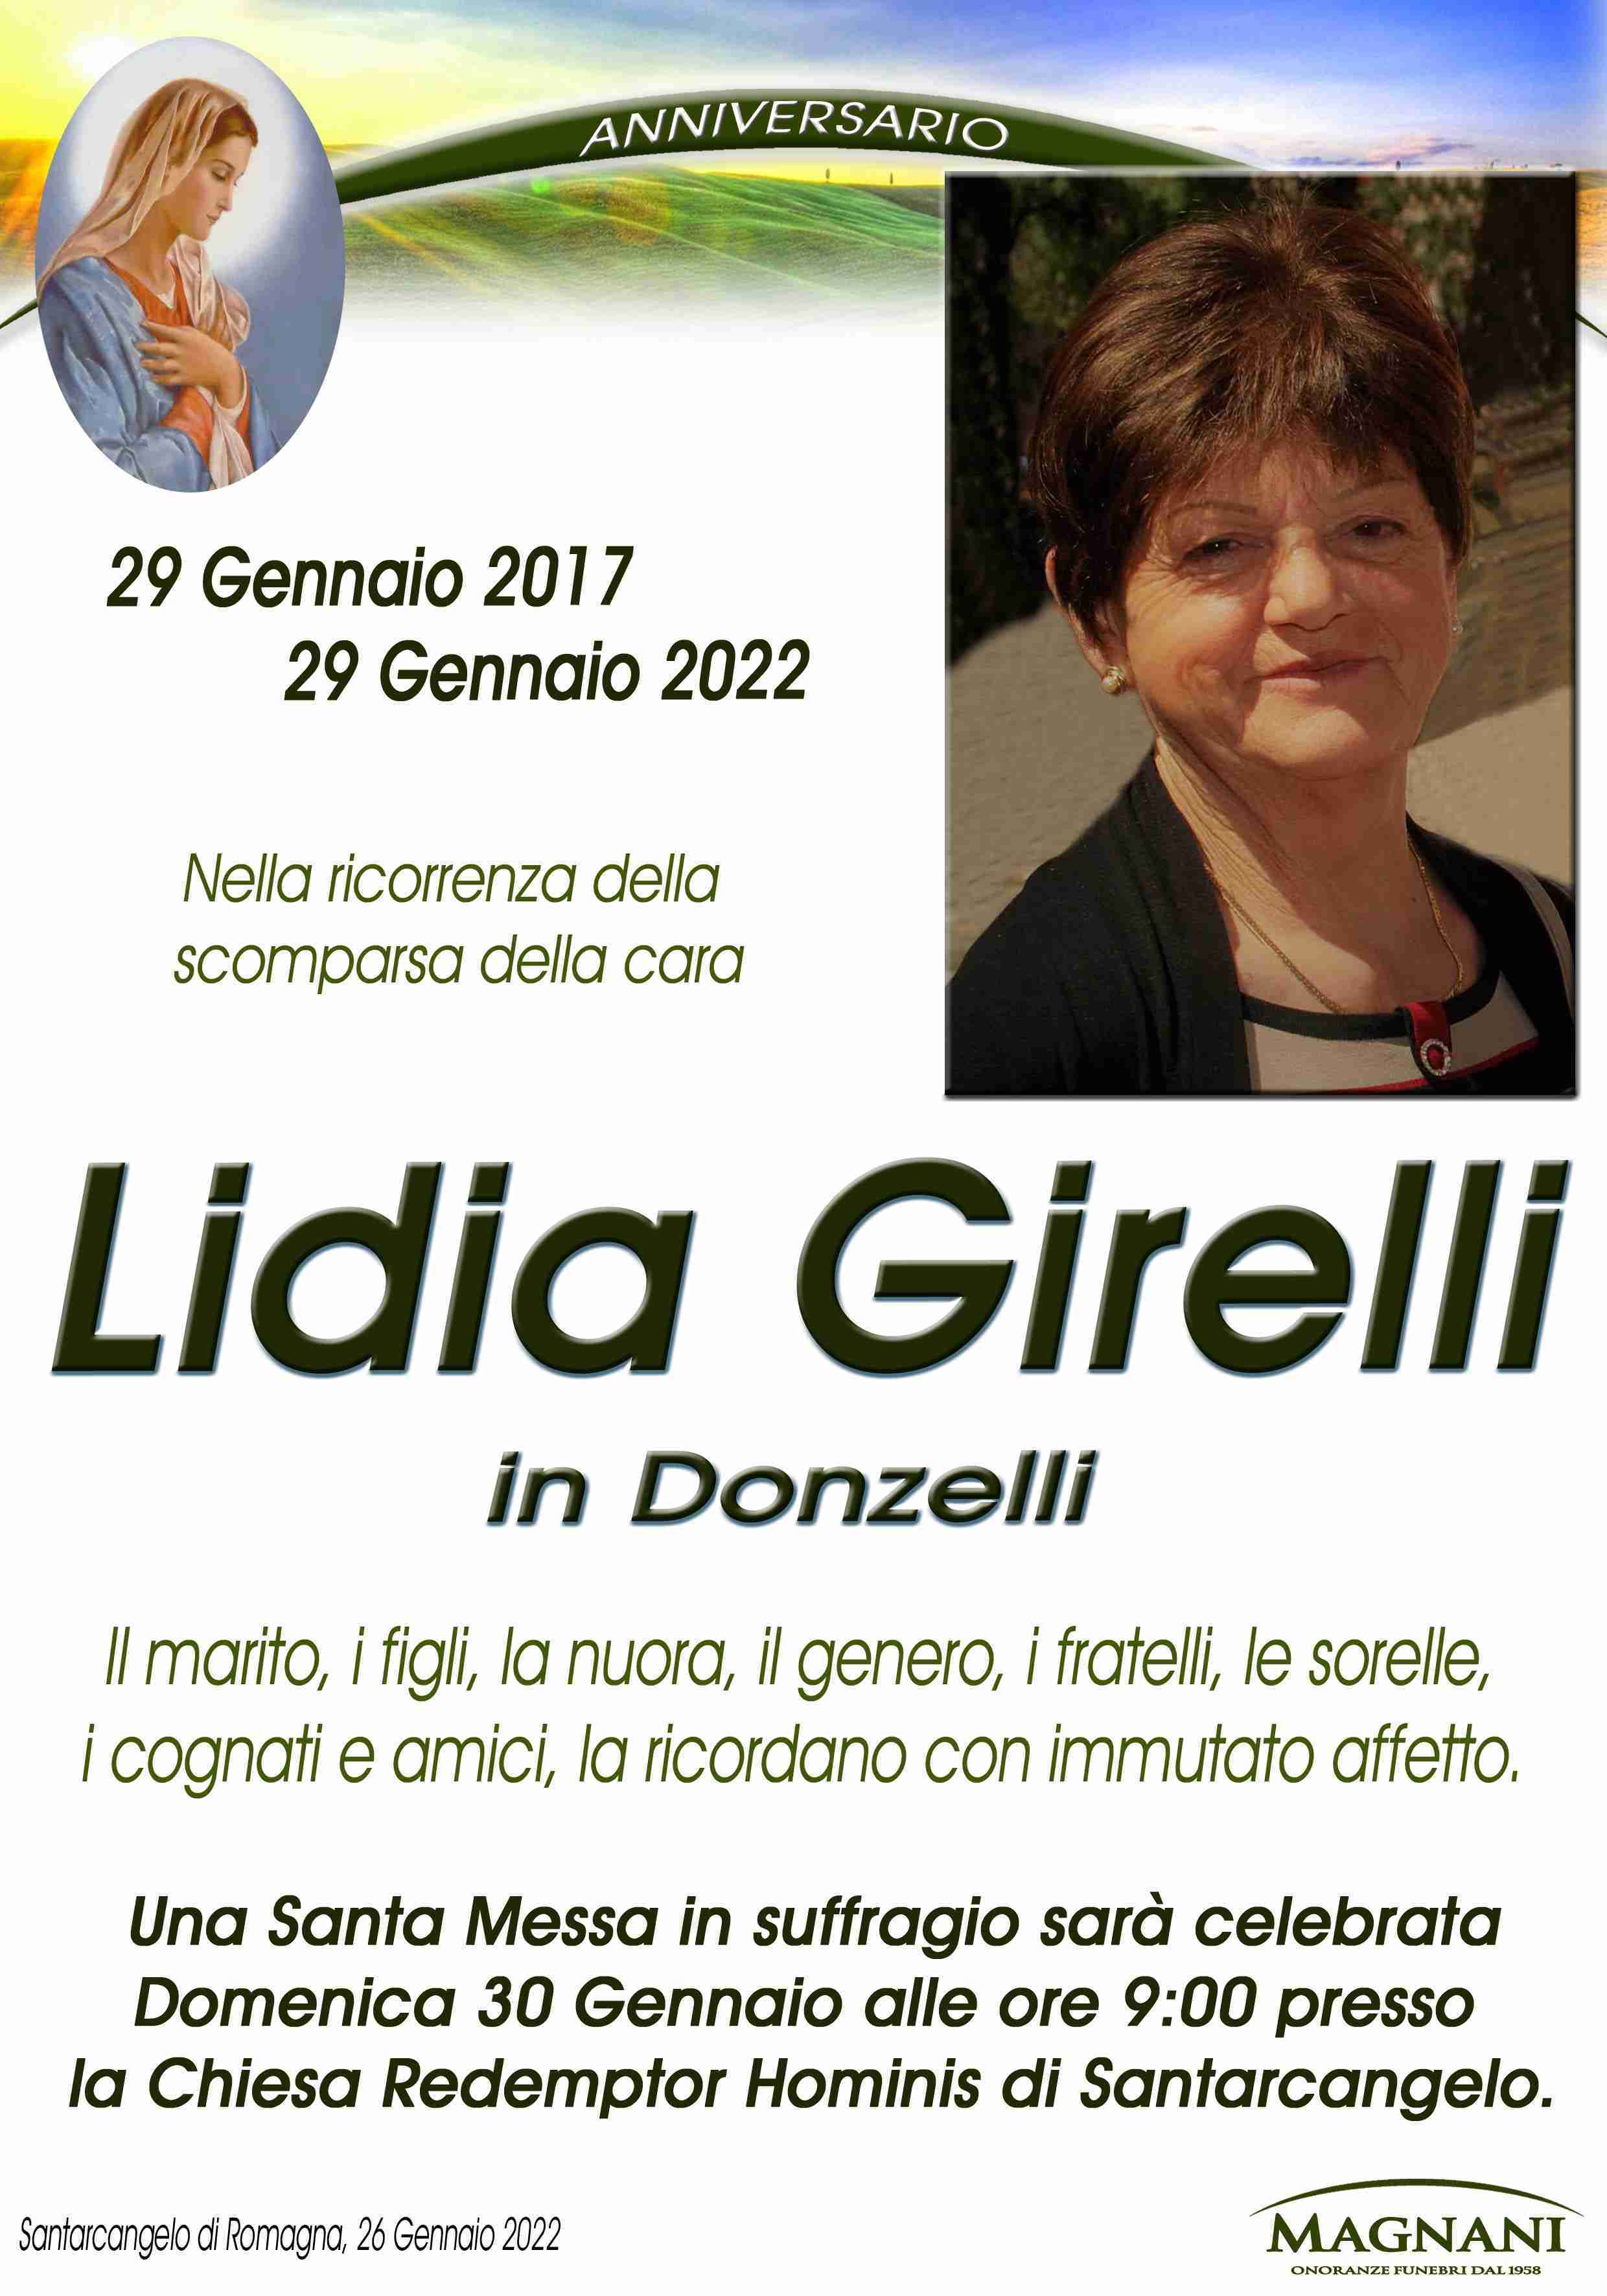 Lidia Girelli